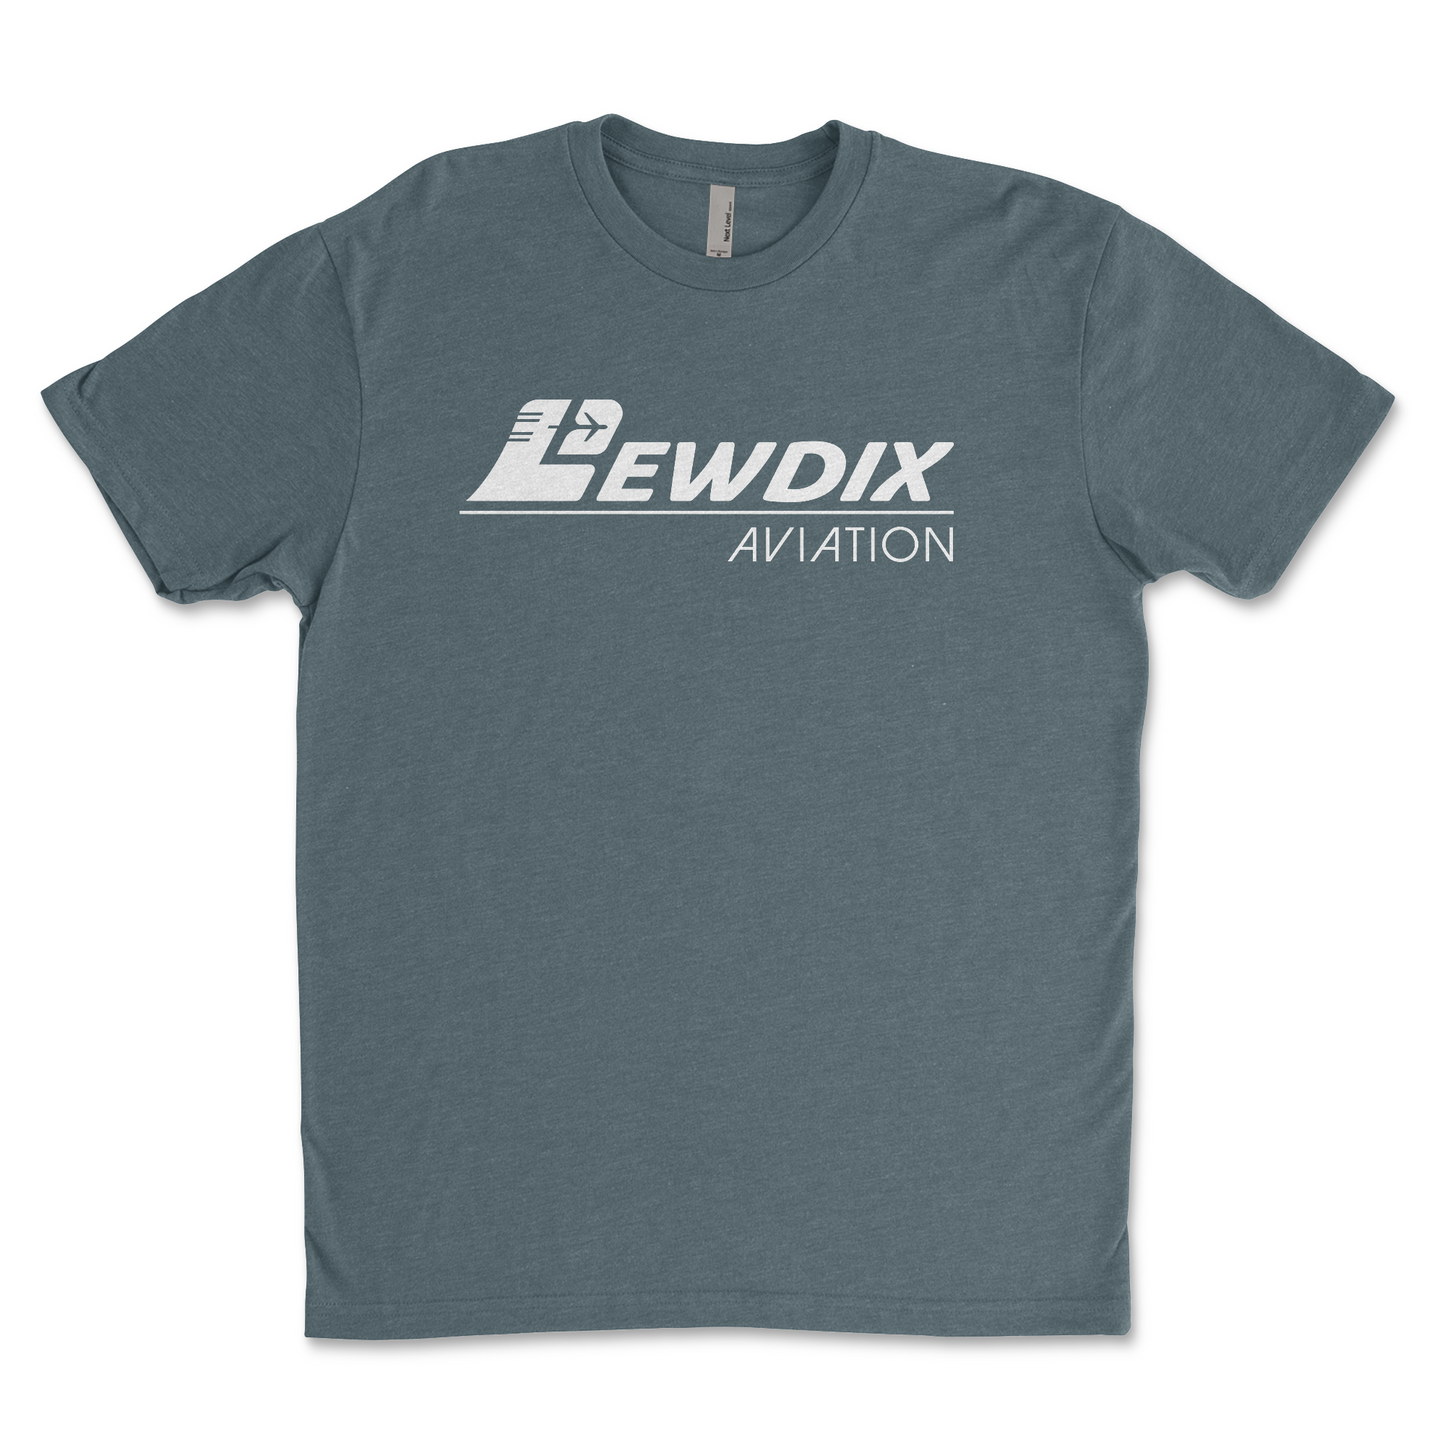 LewDix Aviation Signature T-Shirt